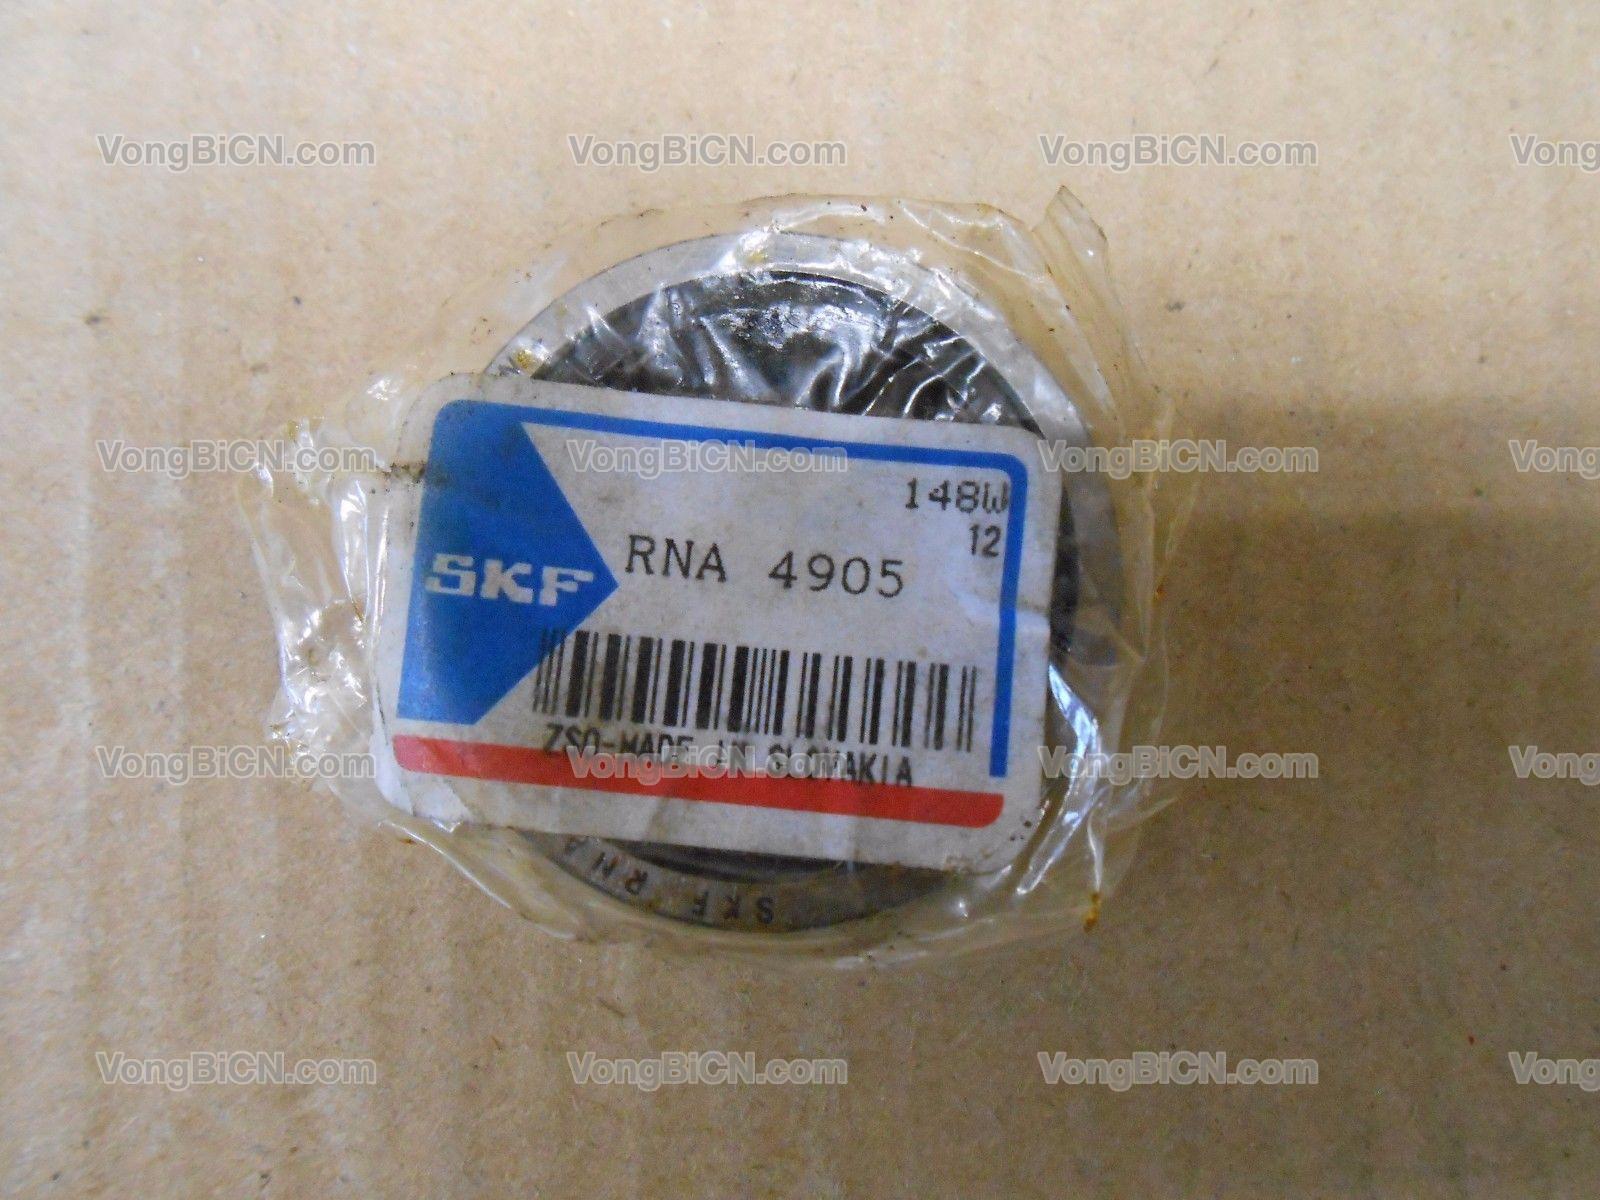 SKF RNA 4905